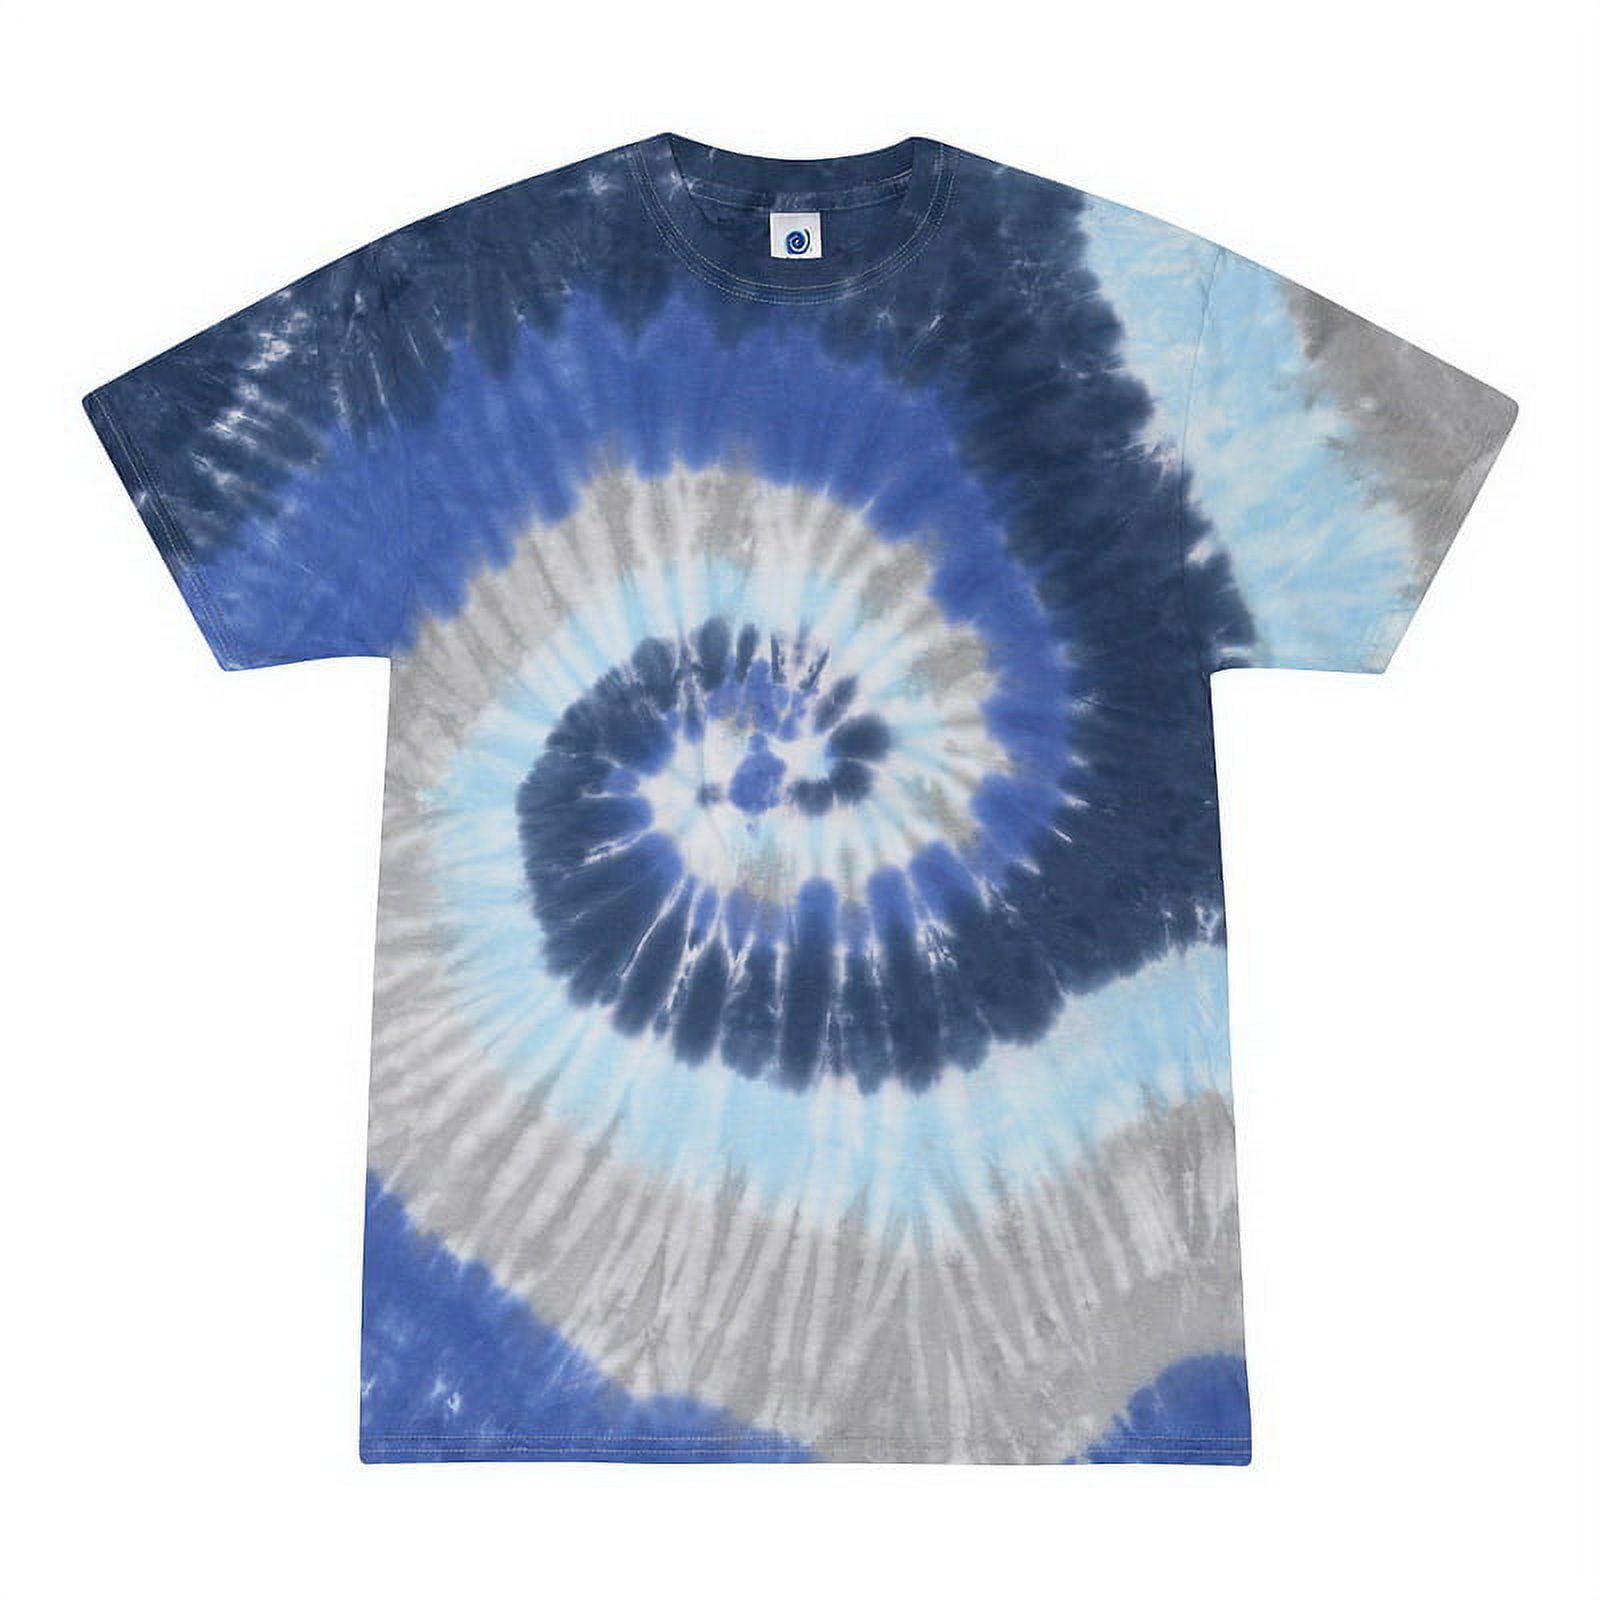 Toddler Shirt / Blue Tie Dye / Cotton Tee / Spiral Design 